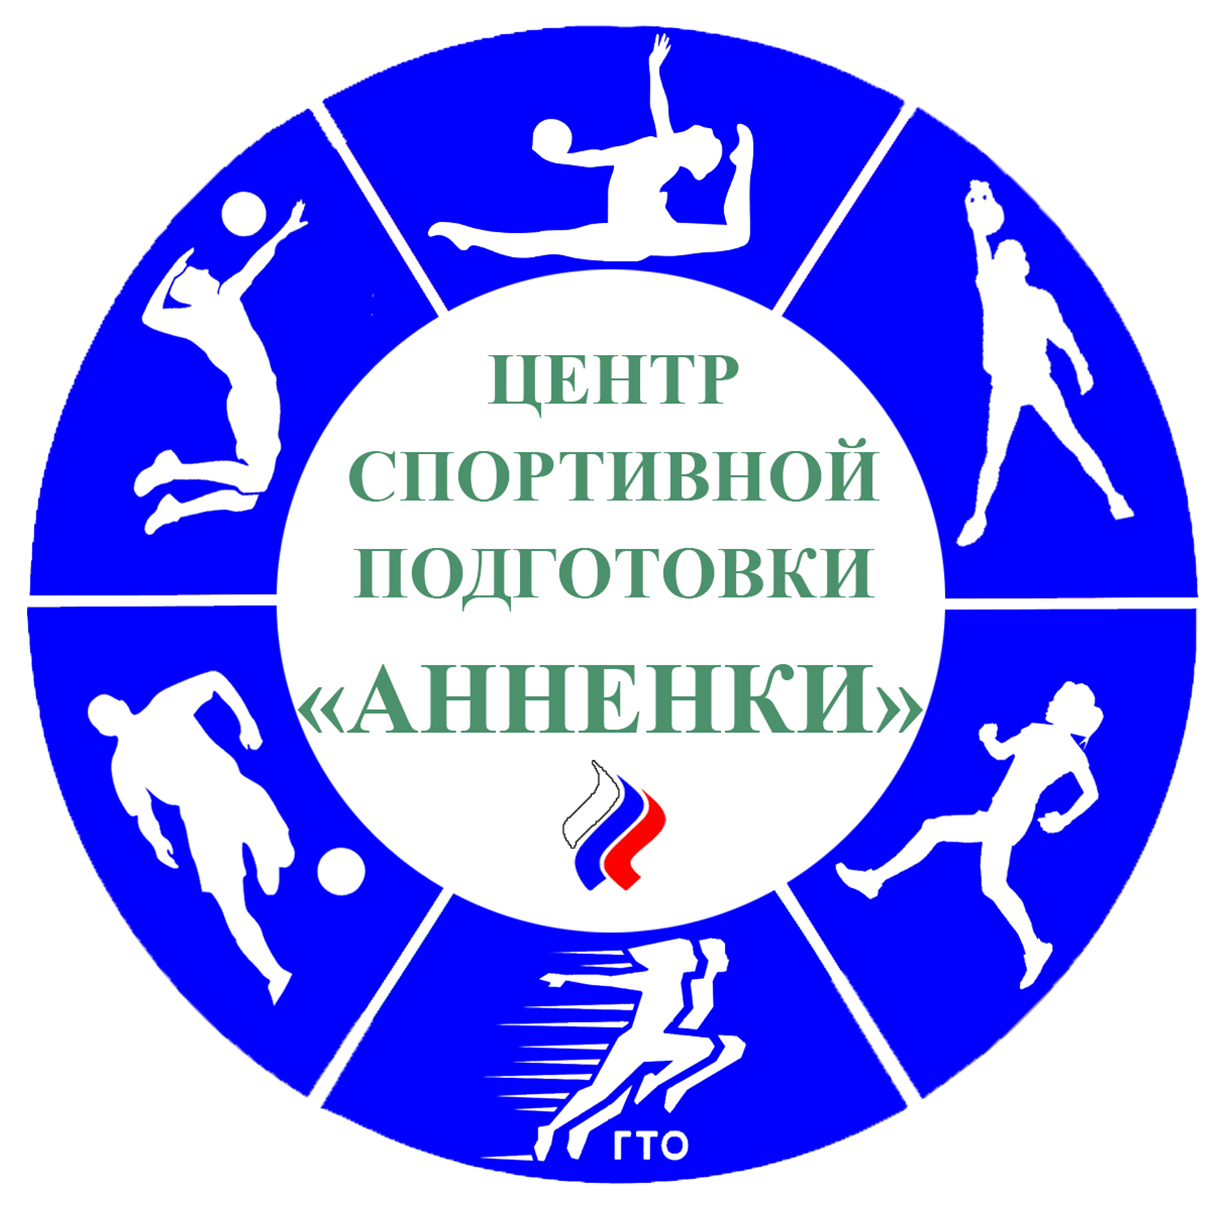 Государственное автономное учреждение Калужской области Центр спортивной подготовки Анненки logo